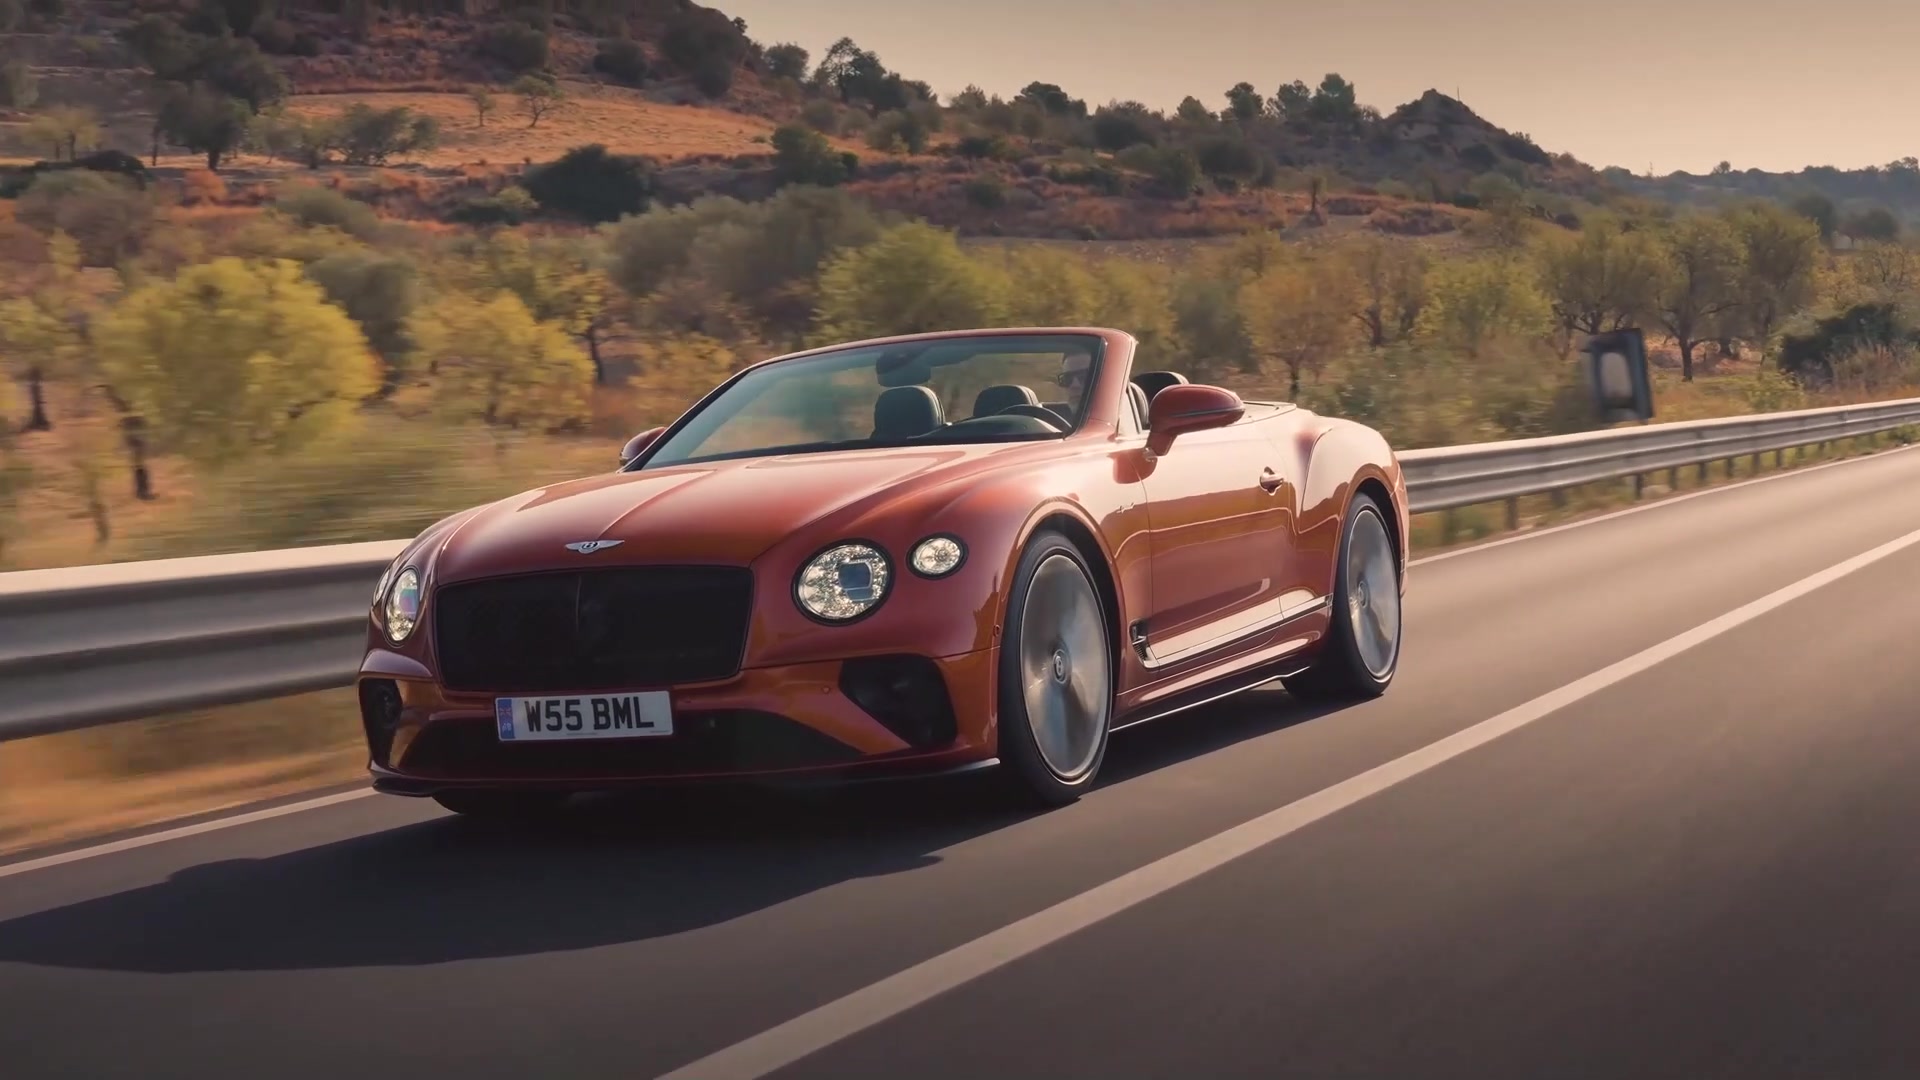 Bentley GT Speed Orange Flame Driving Video